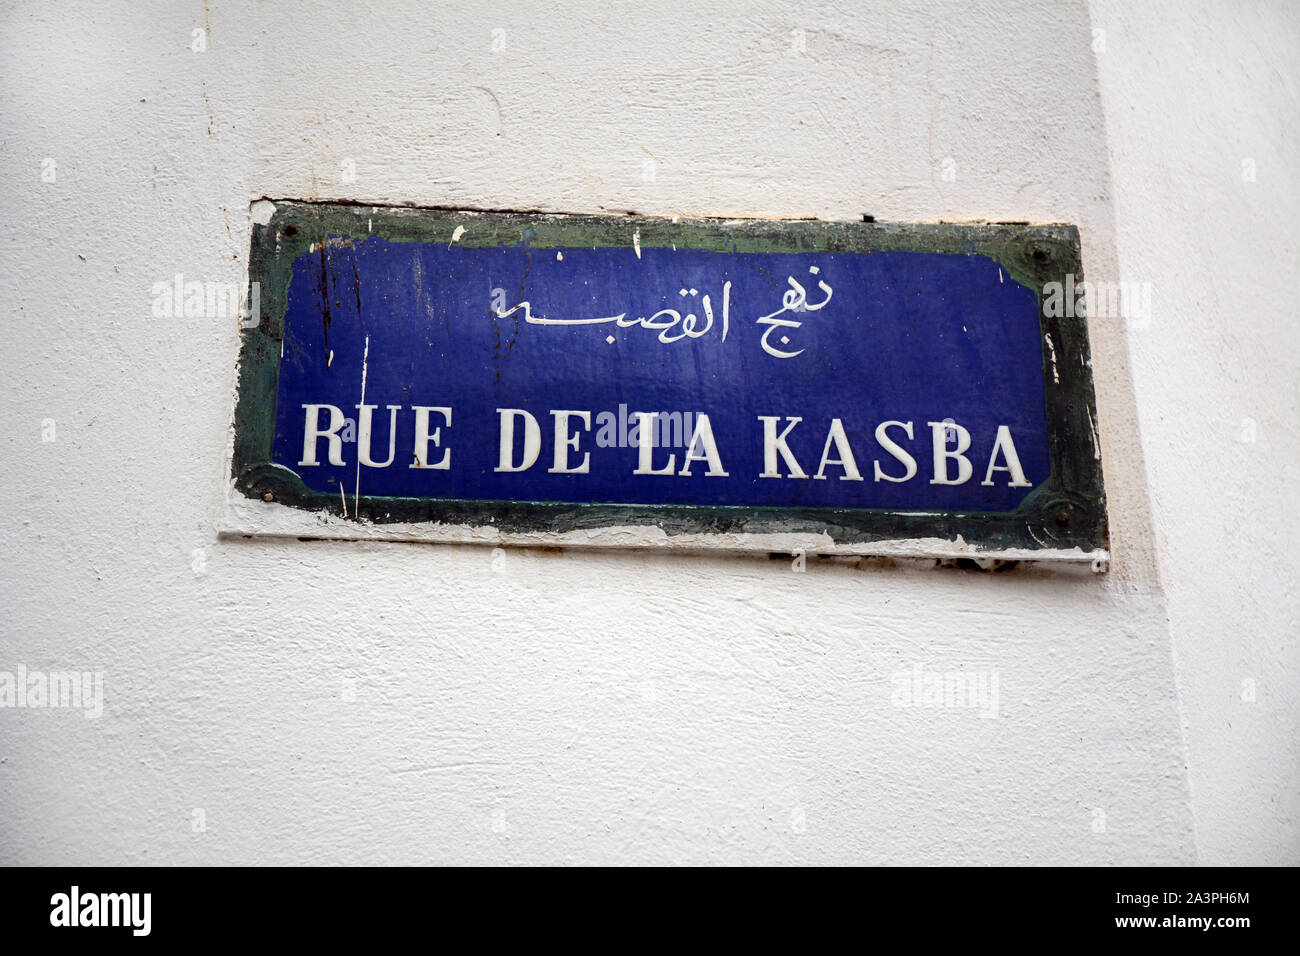 Une plaque de rue en français et en arabe, sur la Rue De La Kasba trouvés dans le quartier de la Kasbah de la médina (vieille ville) de Tunis, Tunisie. Banque D'Images